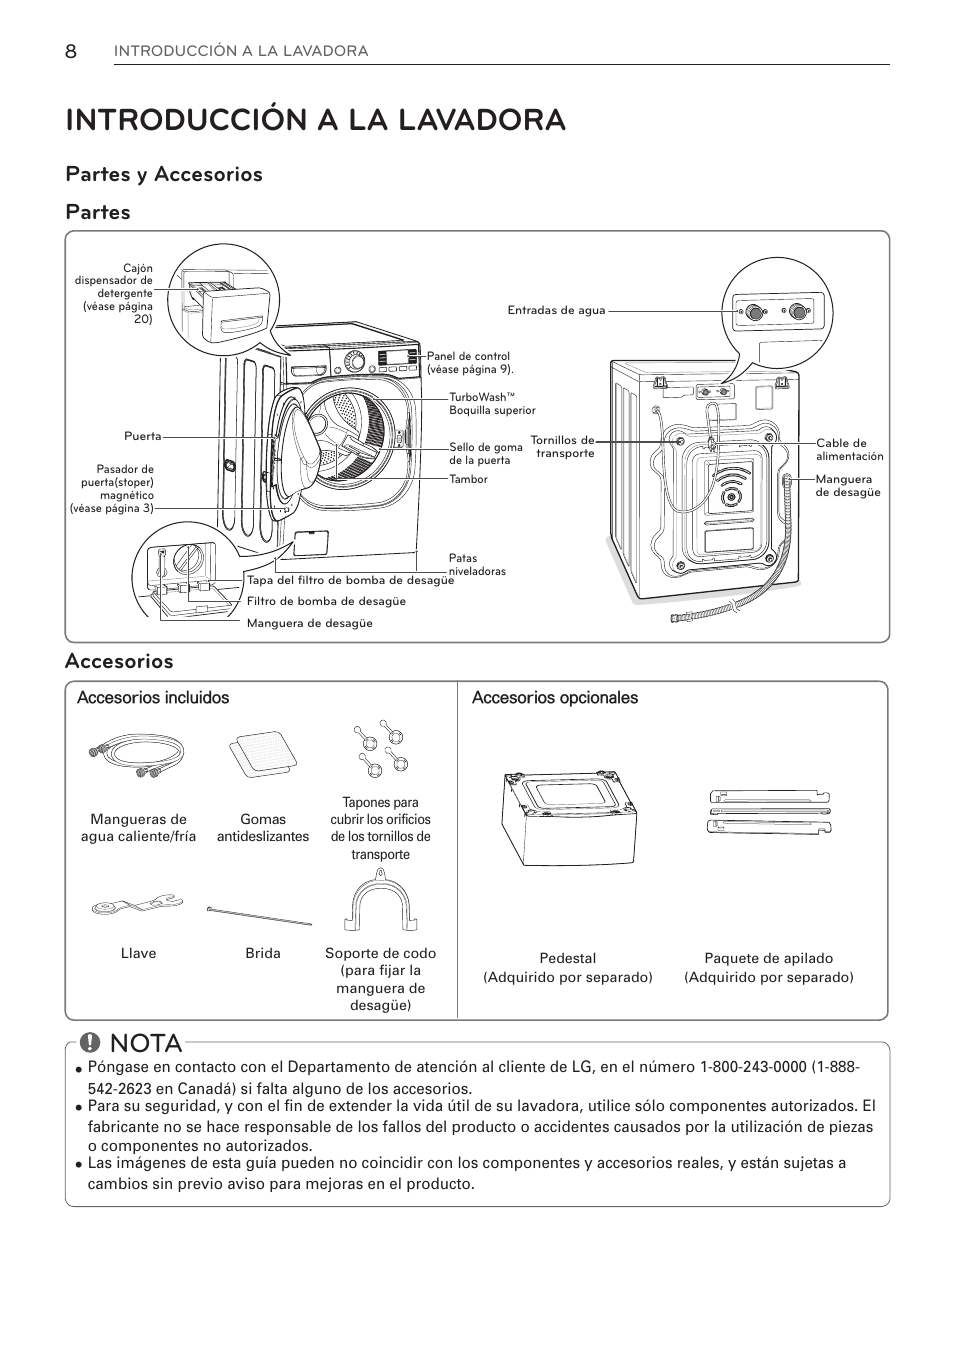 Introducción a la lavadora, Nota, Accesorios | LG WM3997HWA User Manual |  Page 48 / 80 | Original mode